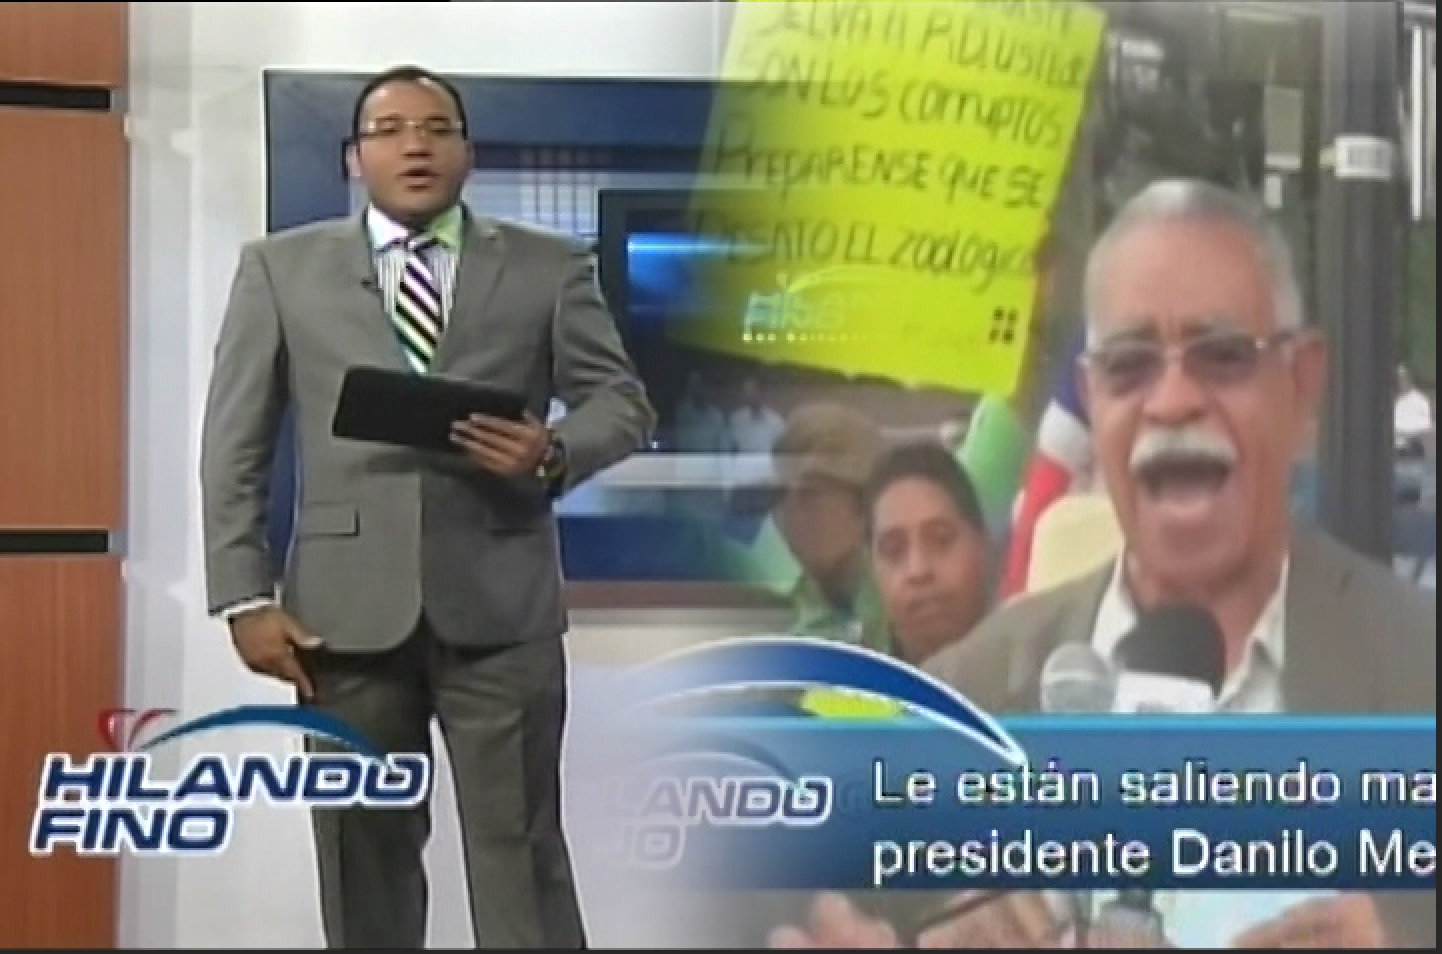 Periodista Salvador Holguín: “Le Están Saliendo Mal Las Cosas Al Presidente D.M, Dominicanos En NY Repudian Su Presencia”